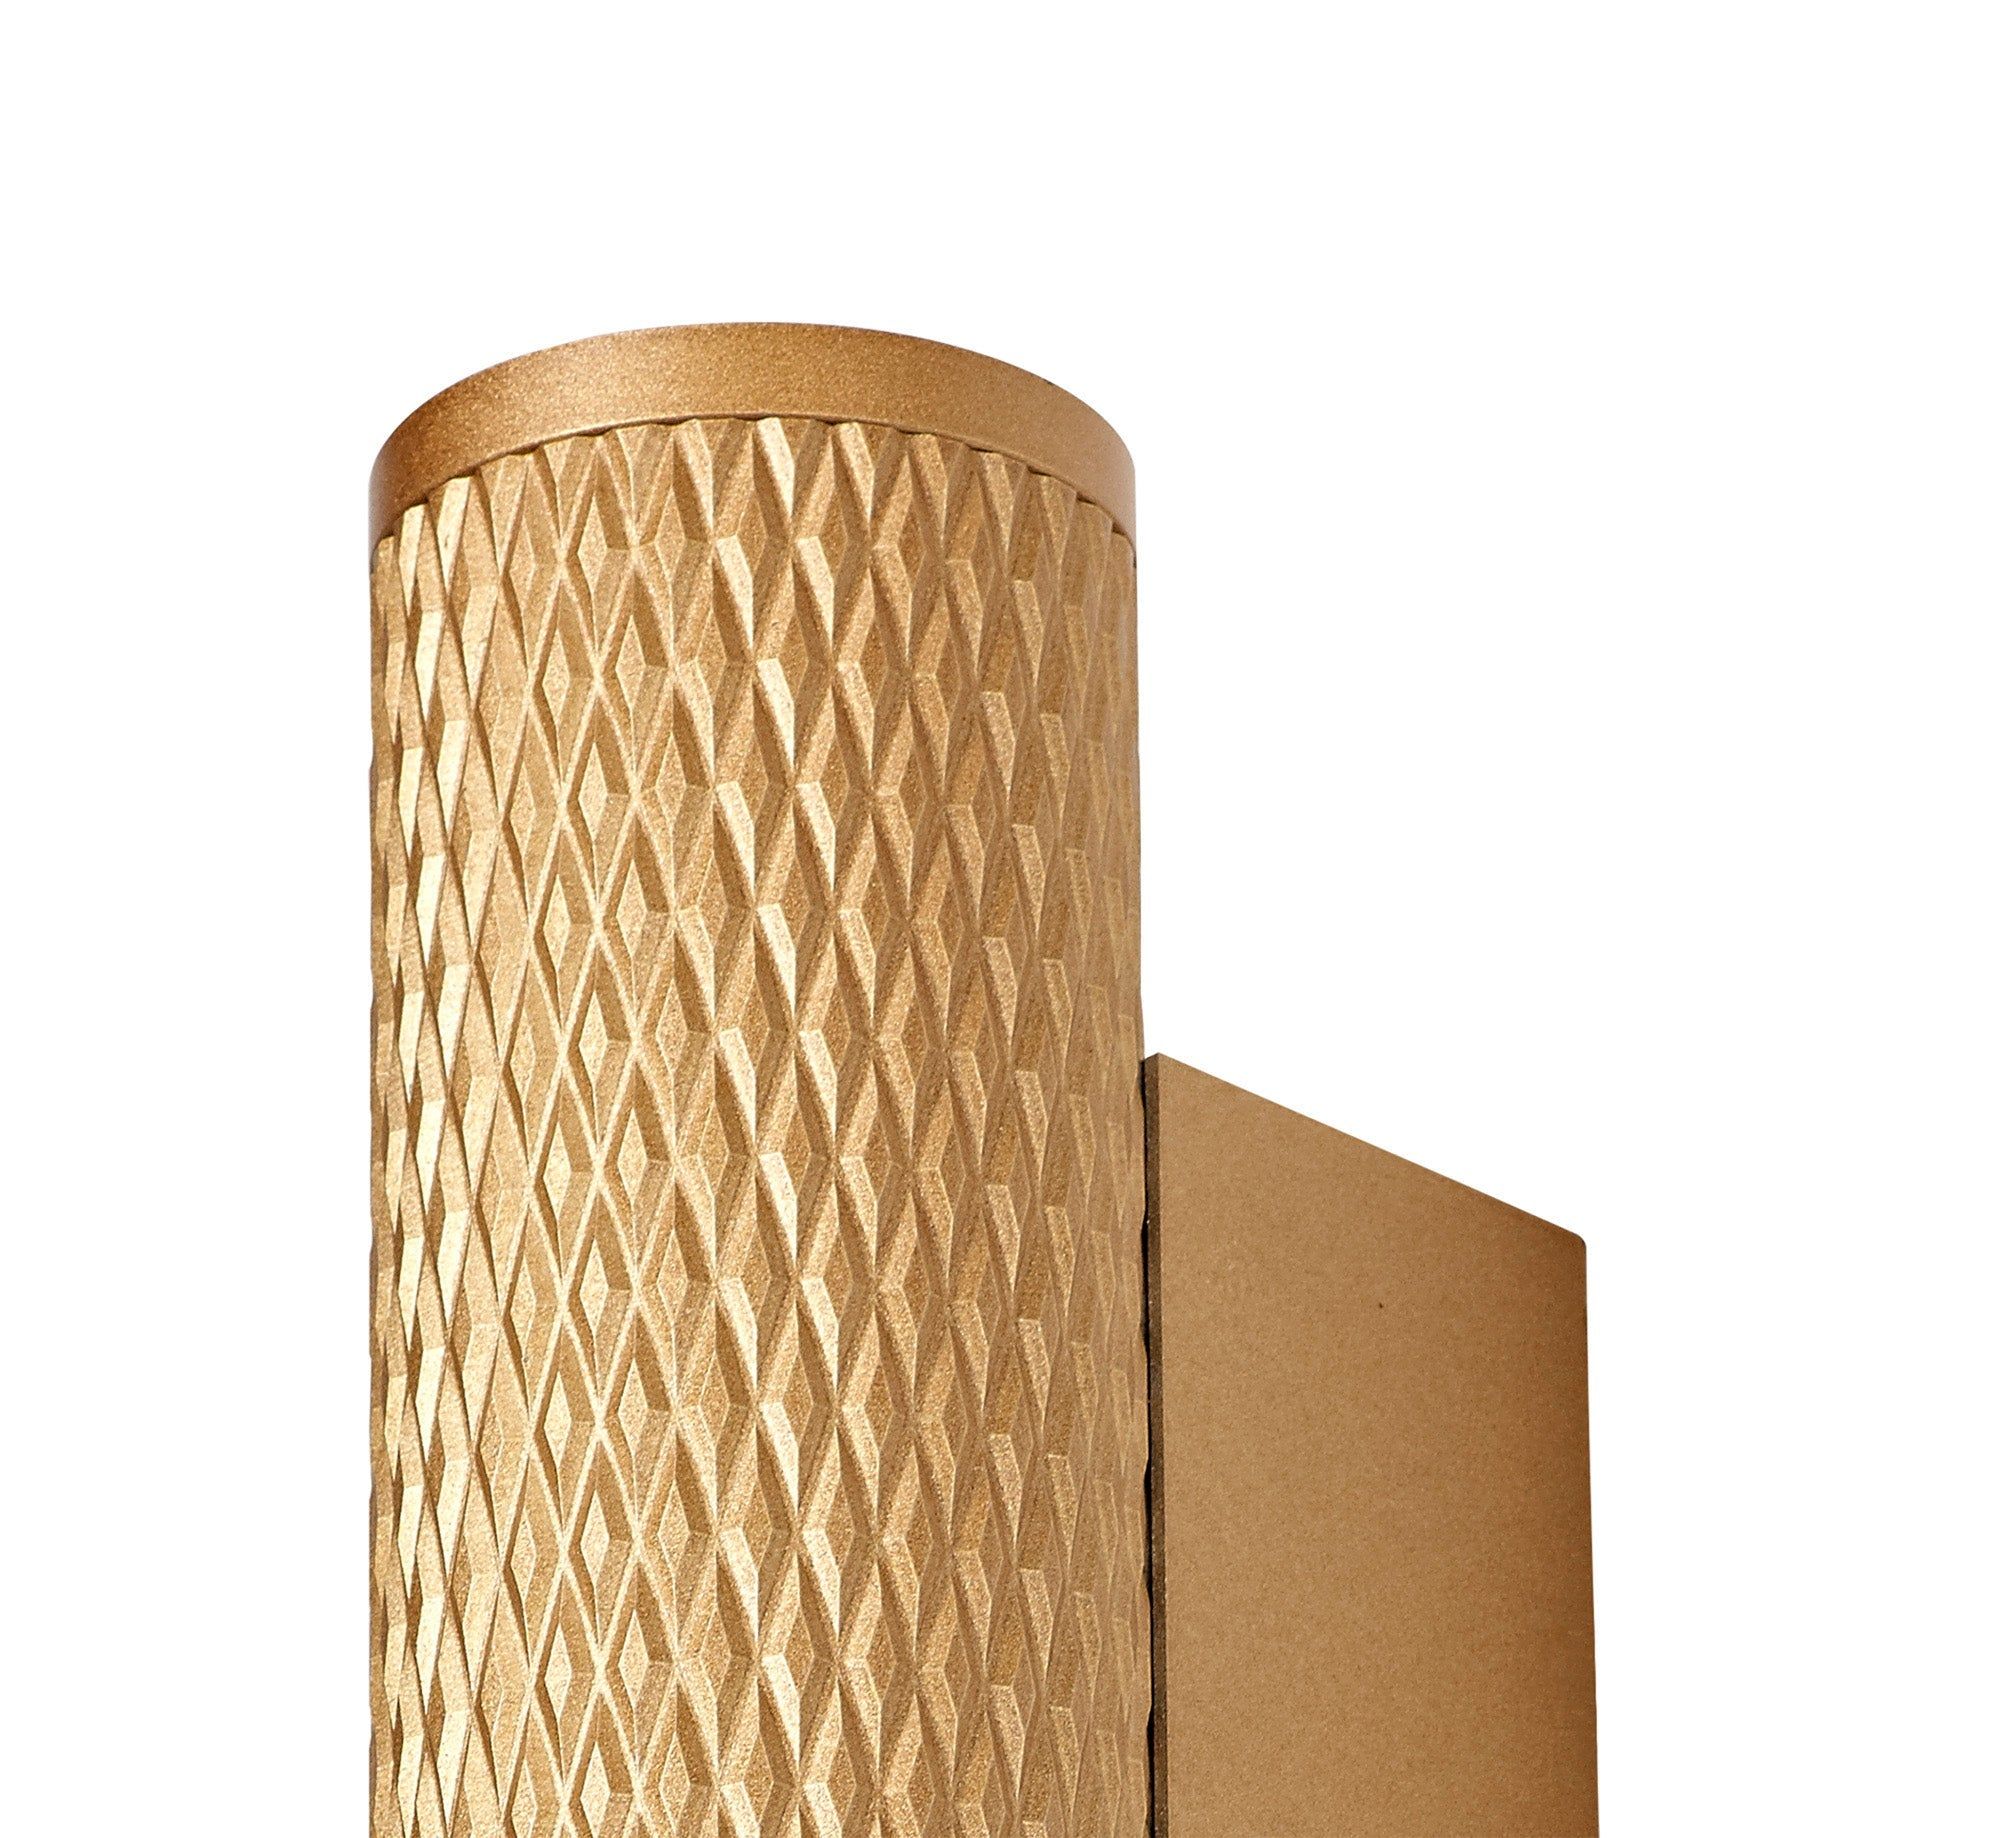 Toihian Wall Lamp, 2 x GU10, Champagne Gold